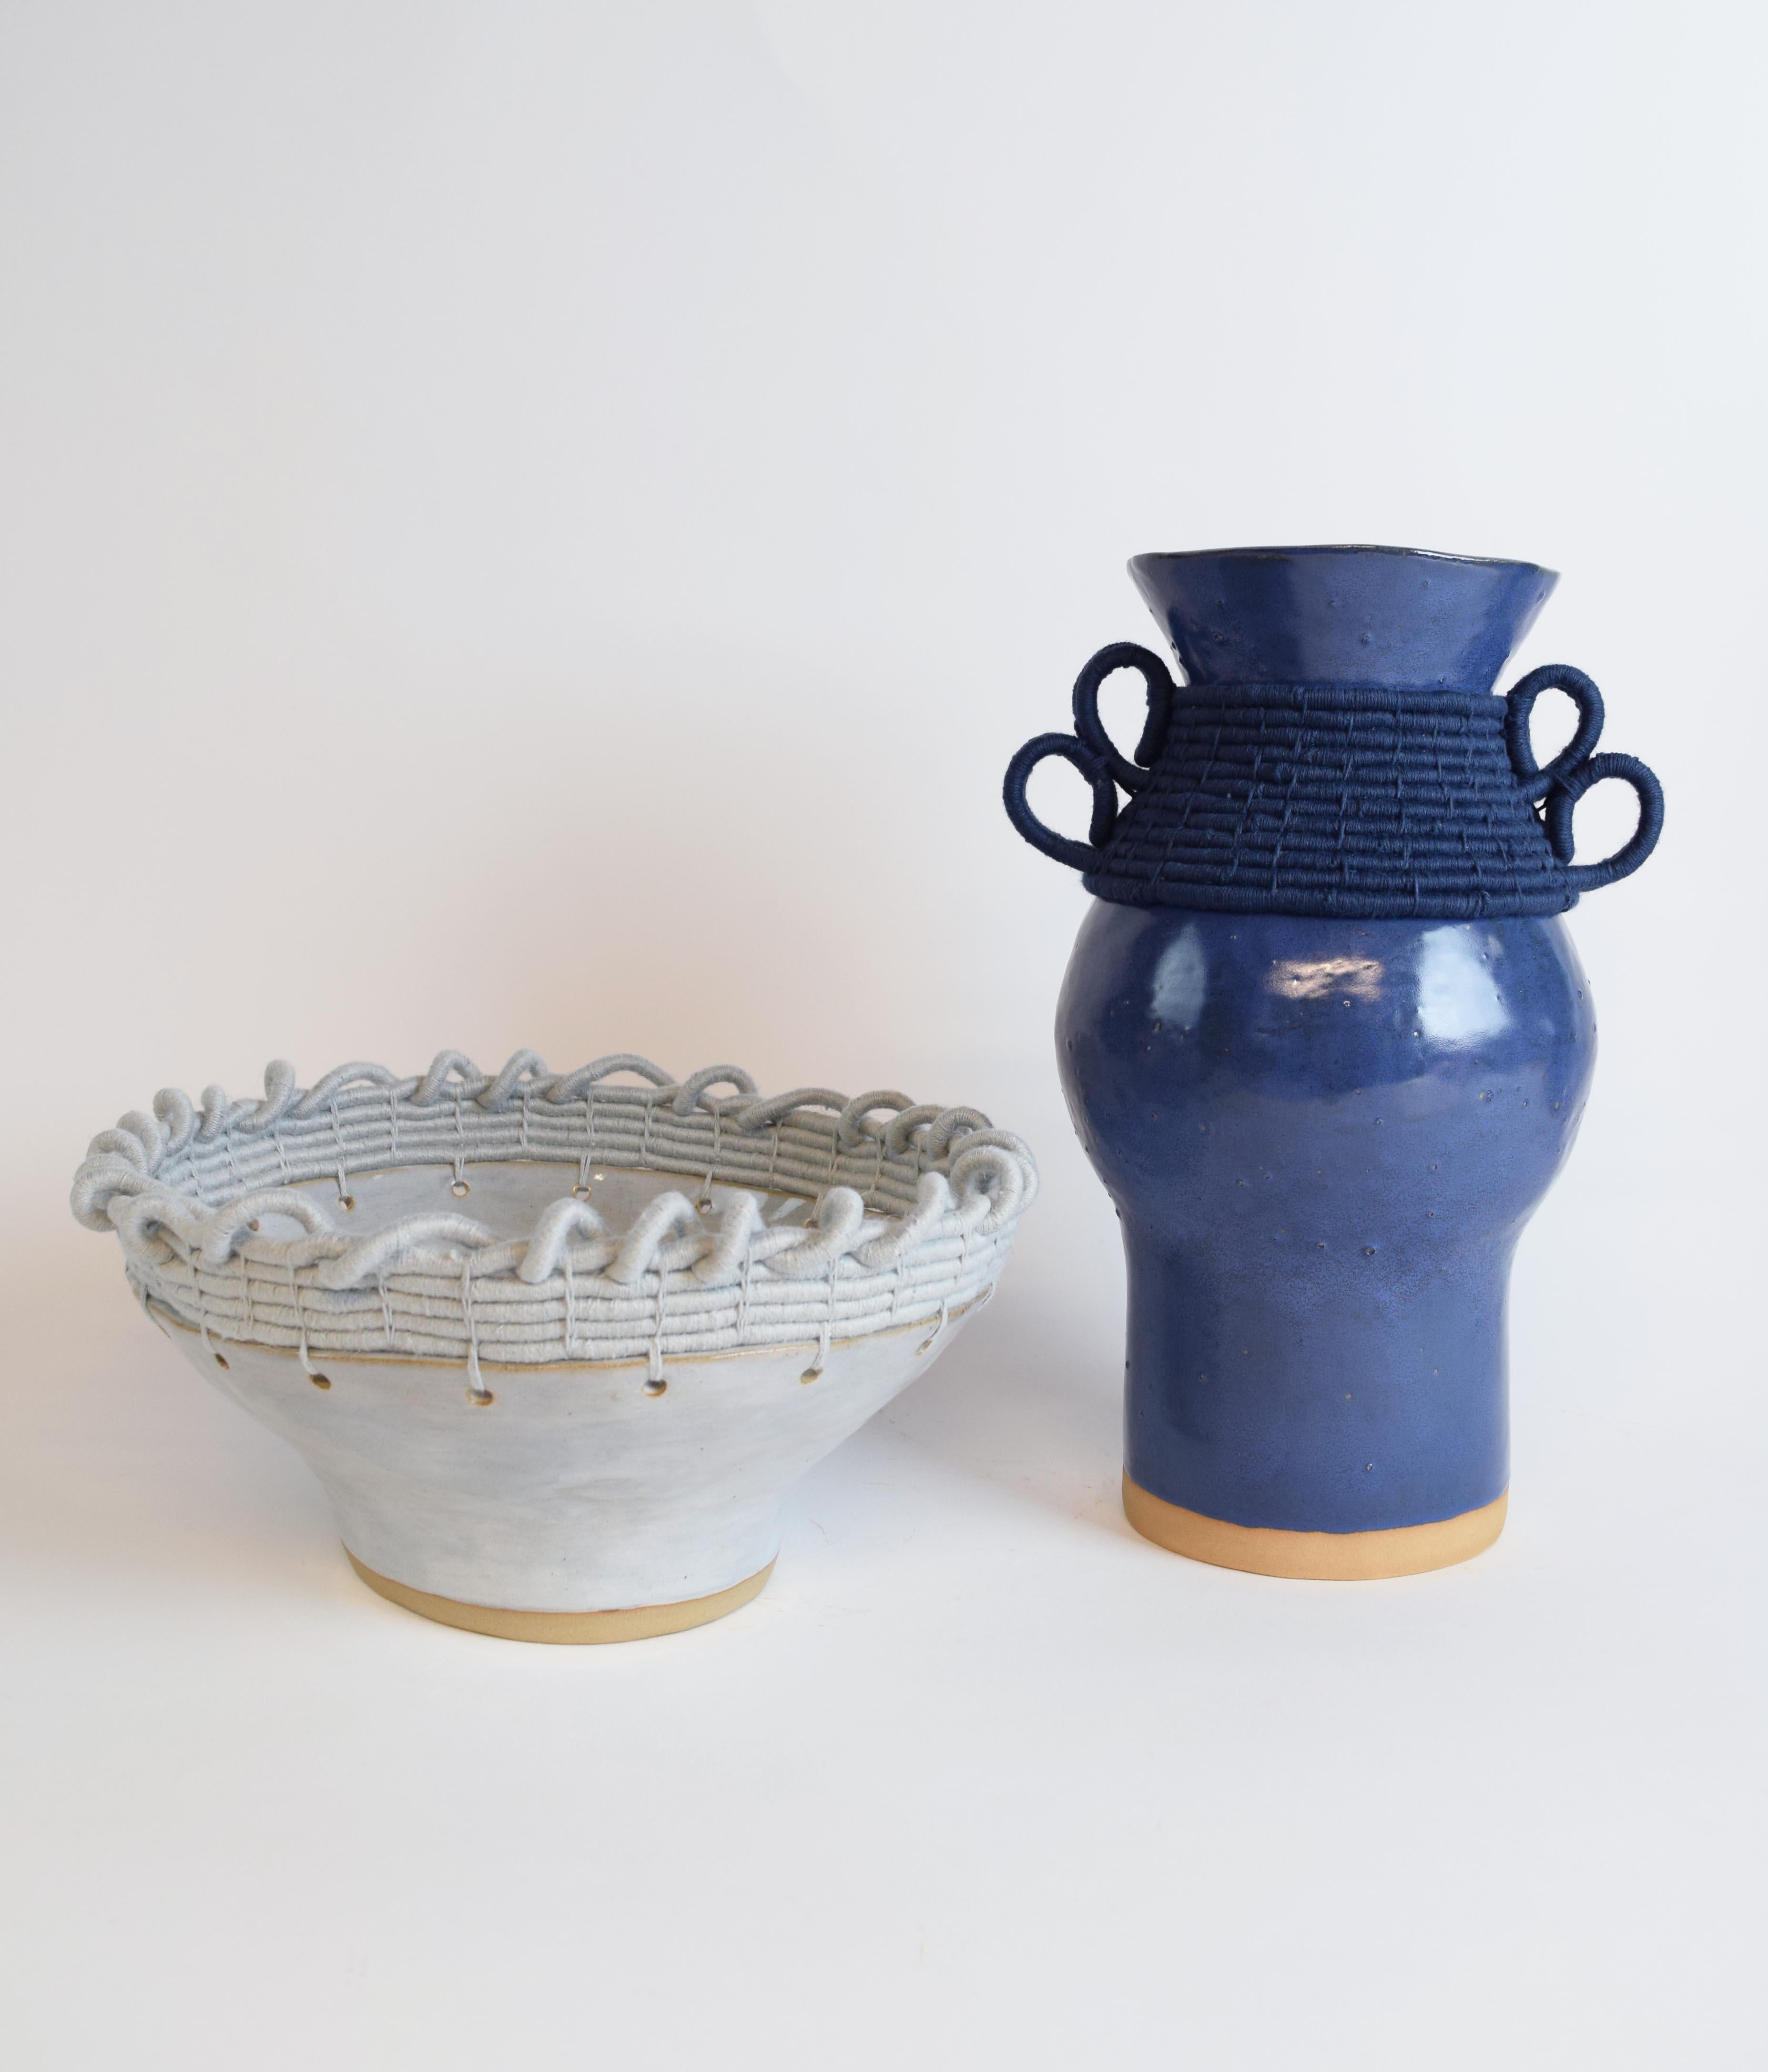 Contemporary One of a Kind Handmade Ceramic Bowl #782, Light Blue Glaze & Woven Cotton Upper